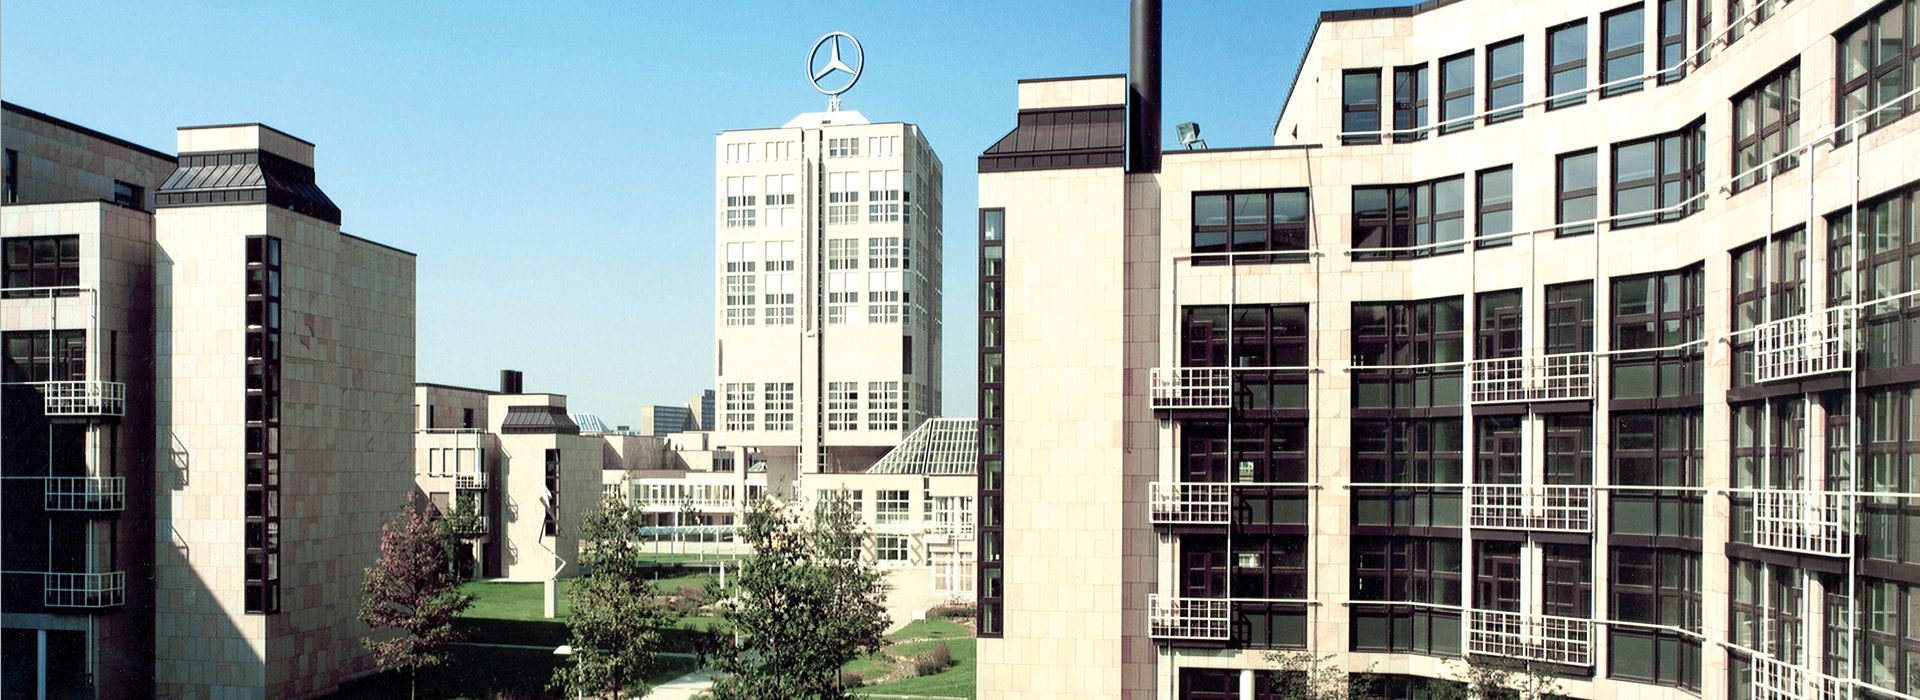 Daimler Chryslers huvudkontor, Stuttgart